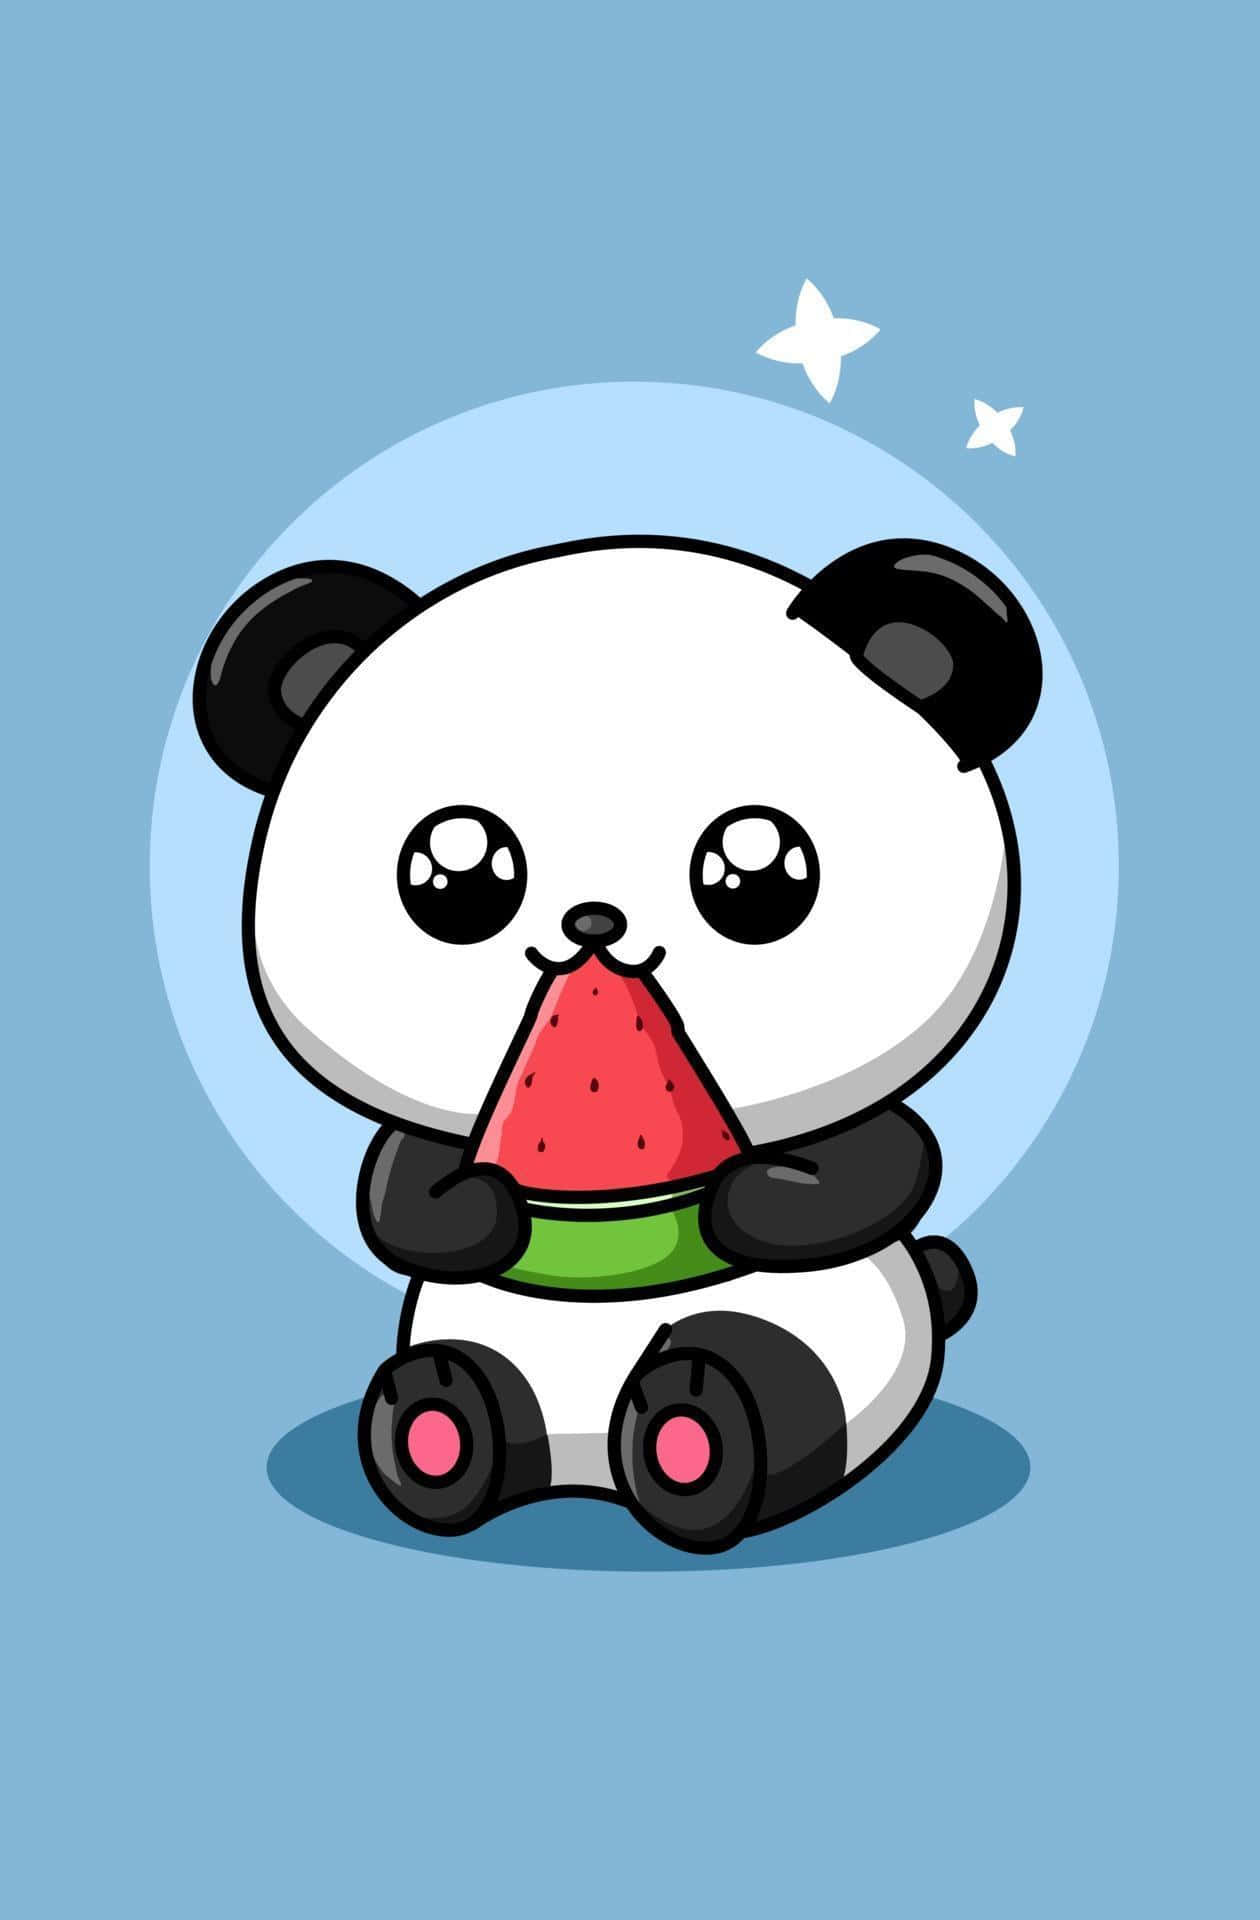 Cute Cartoon Panda Eating Watermelon Wallpaper